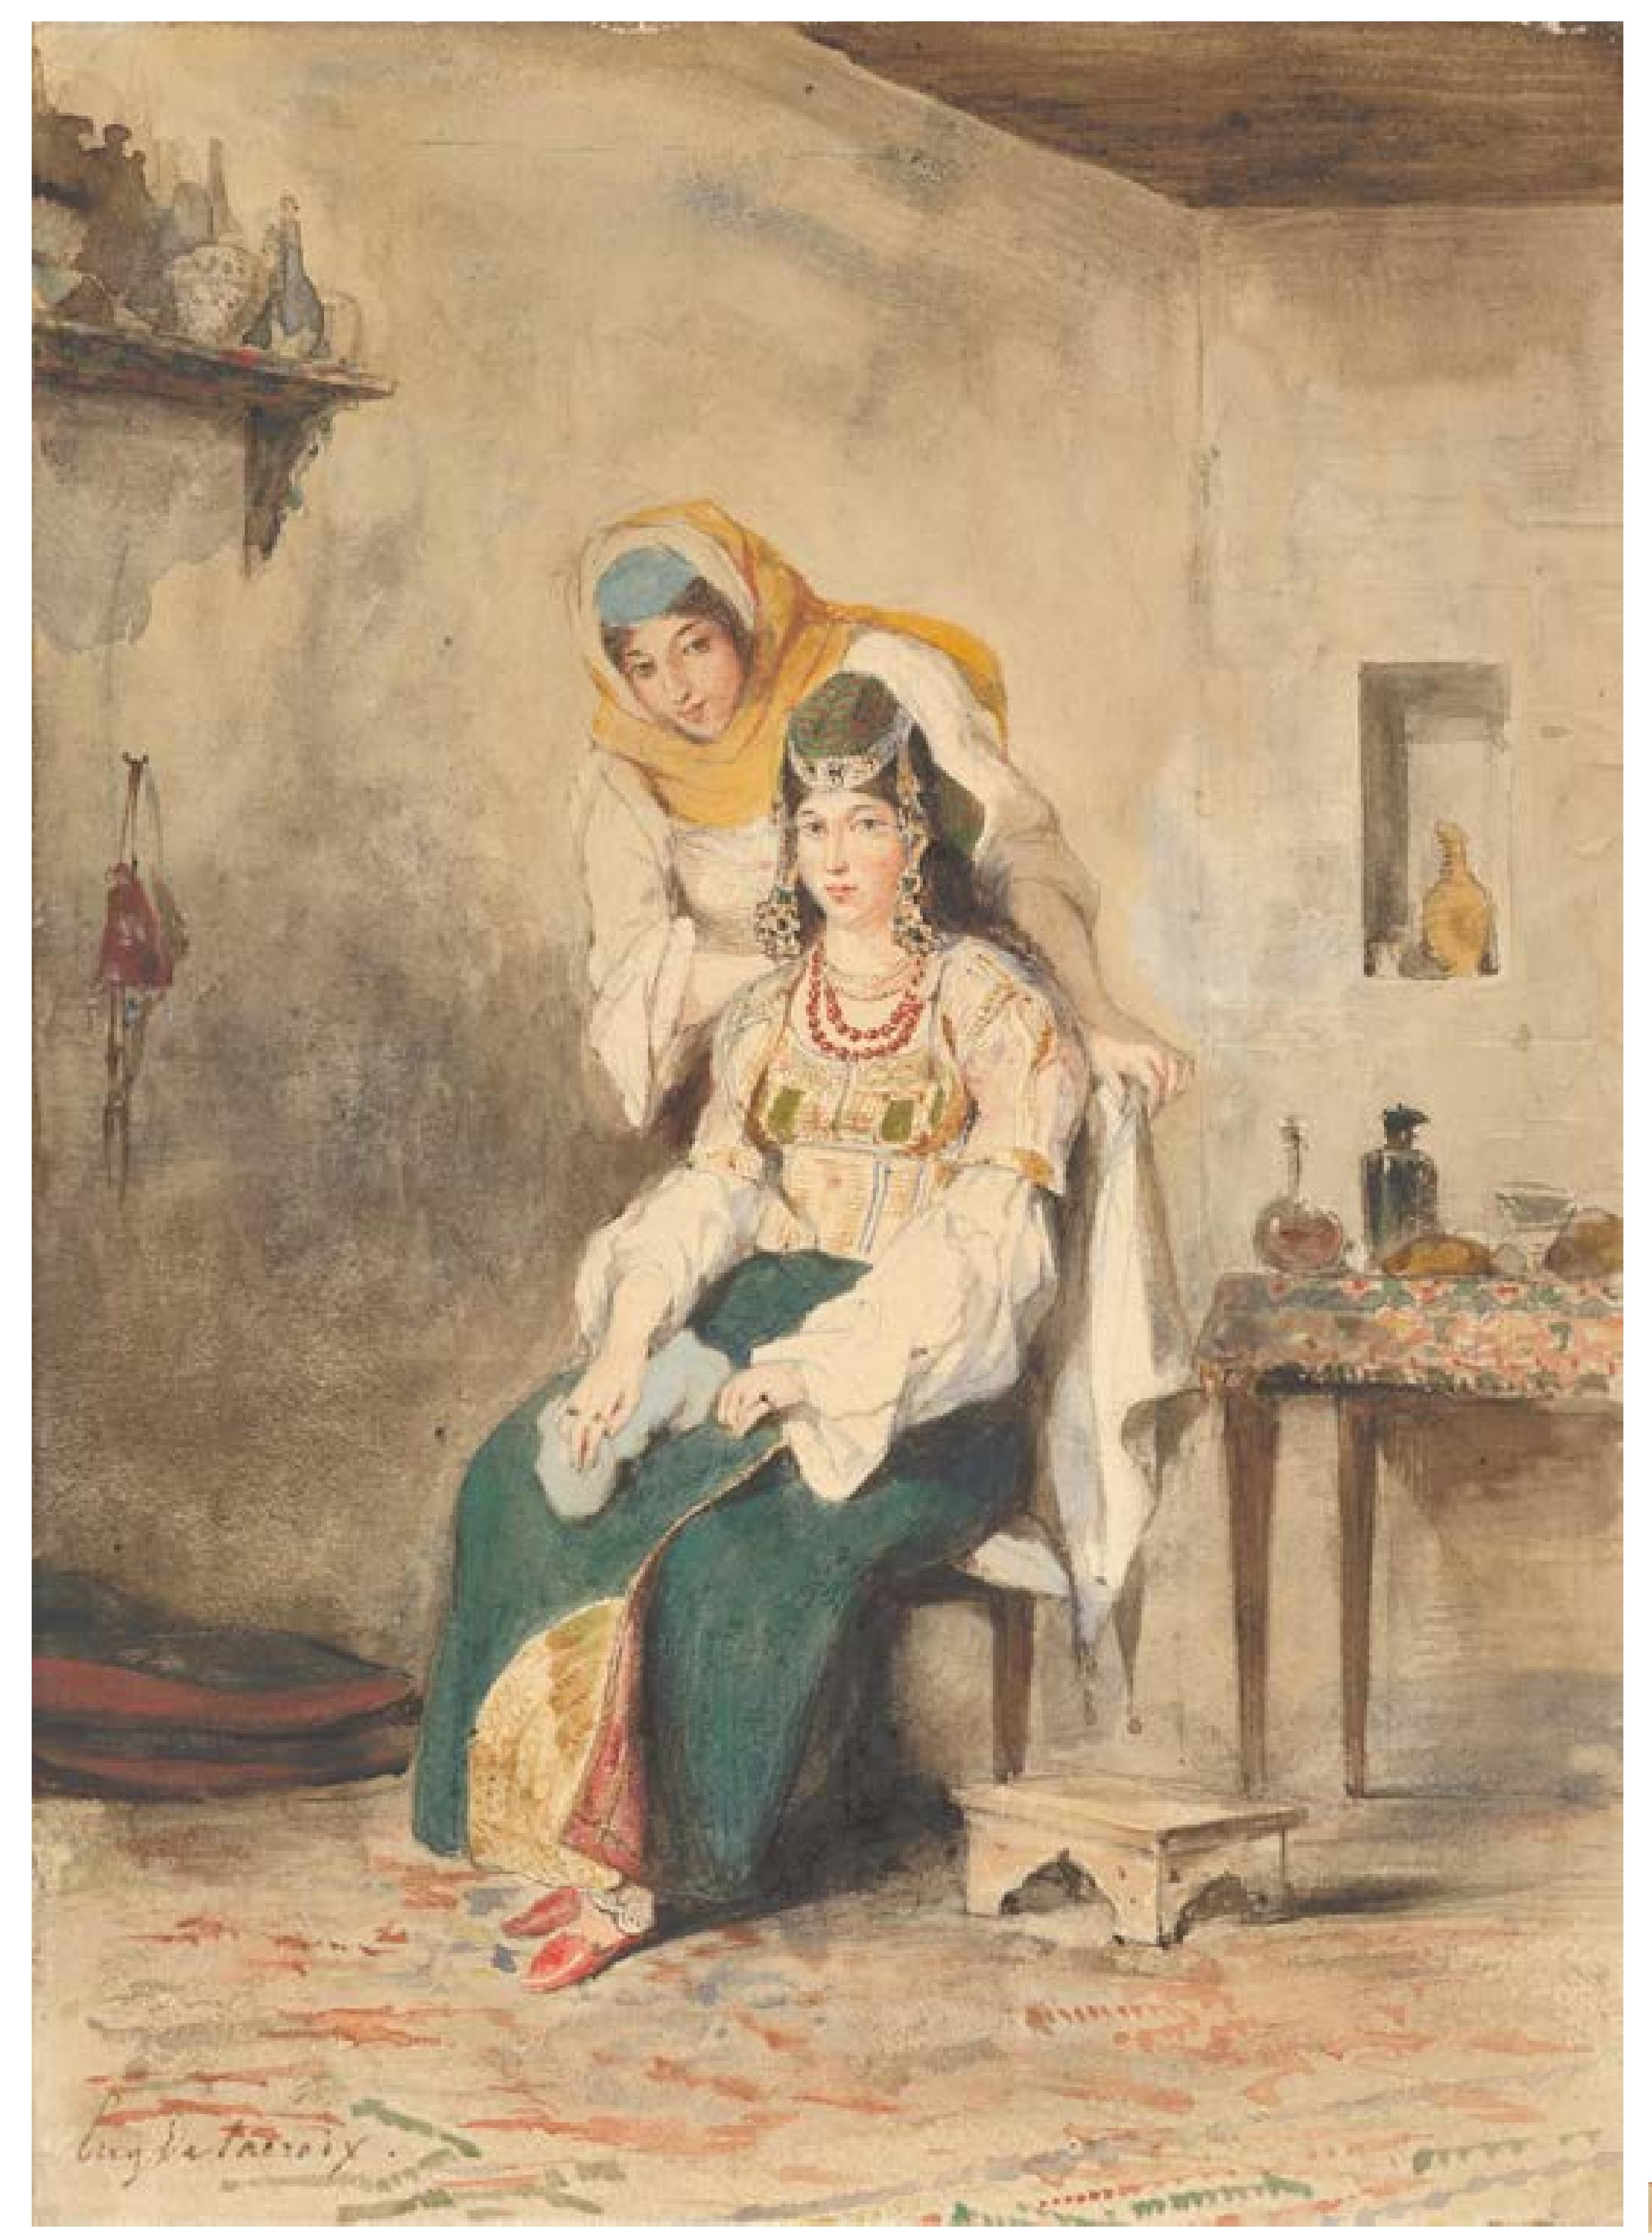 亚伯拉罕·本·奇摩尔的妻子萨达和他们的女儿之一普雷帕拉达